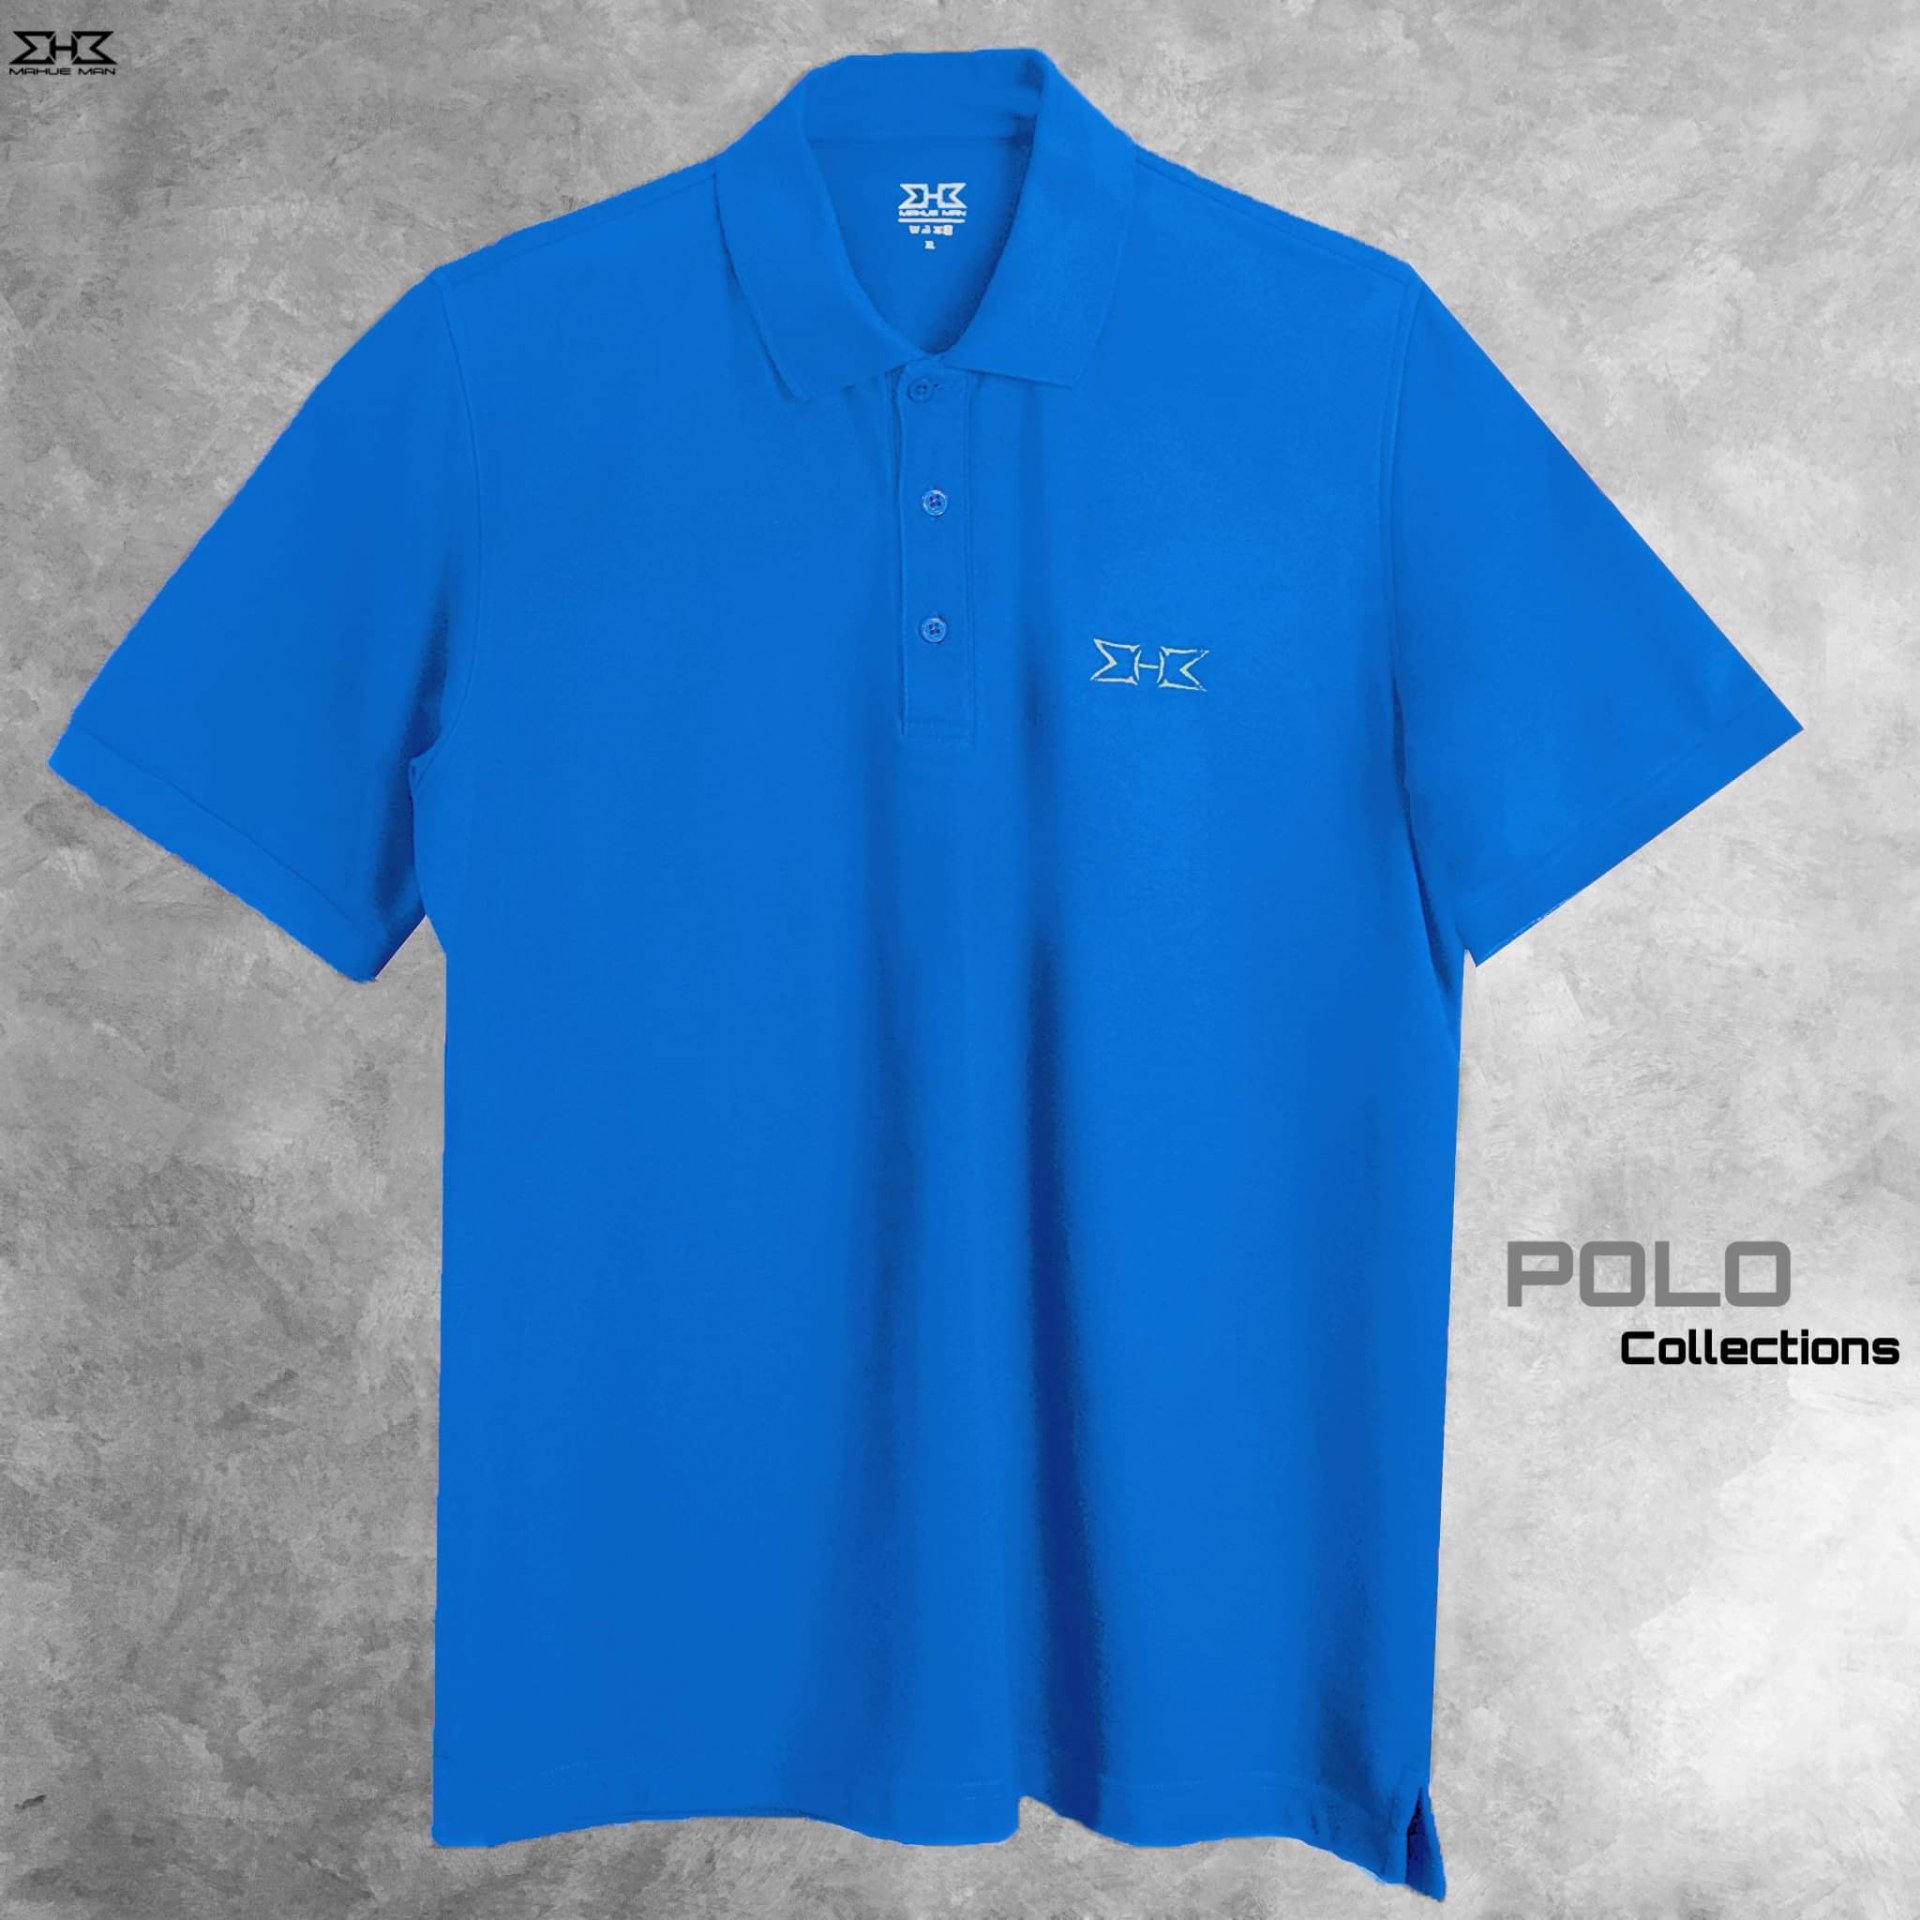 เสื้อโปโลไซส์ใหญ่ สีฟ้า XL (48") - 5XL (64")